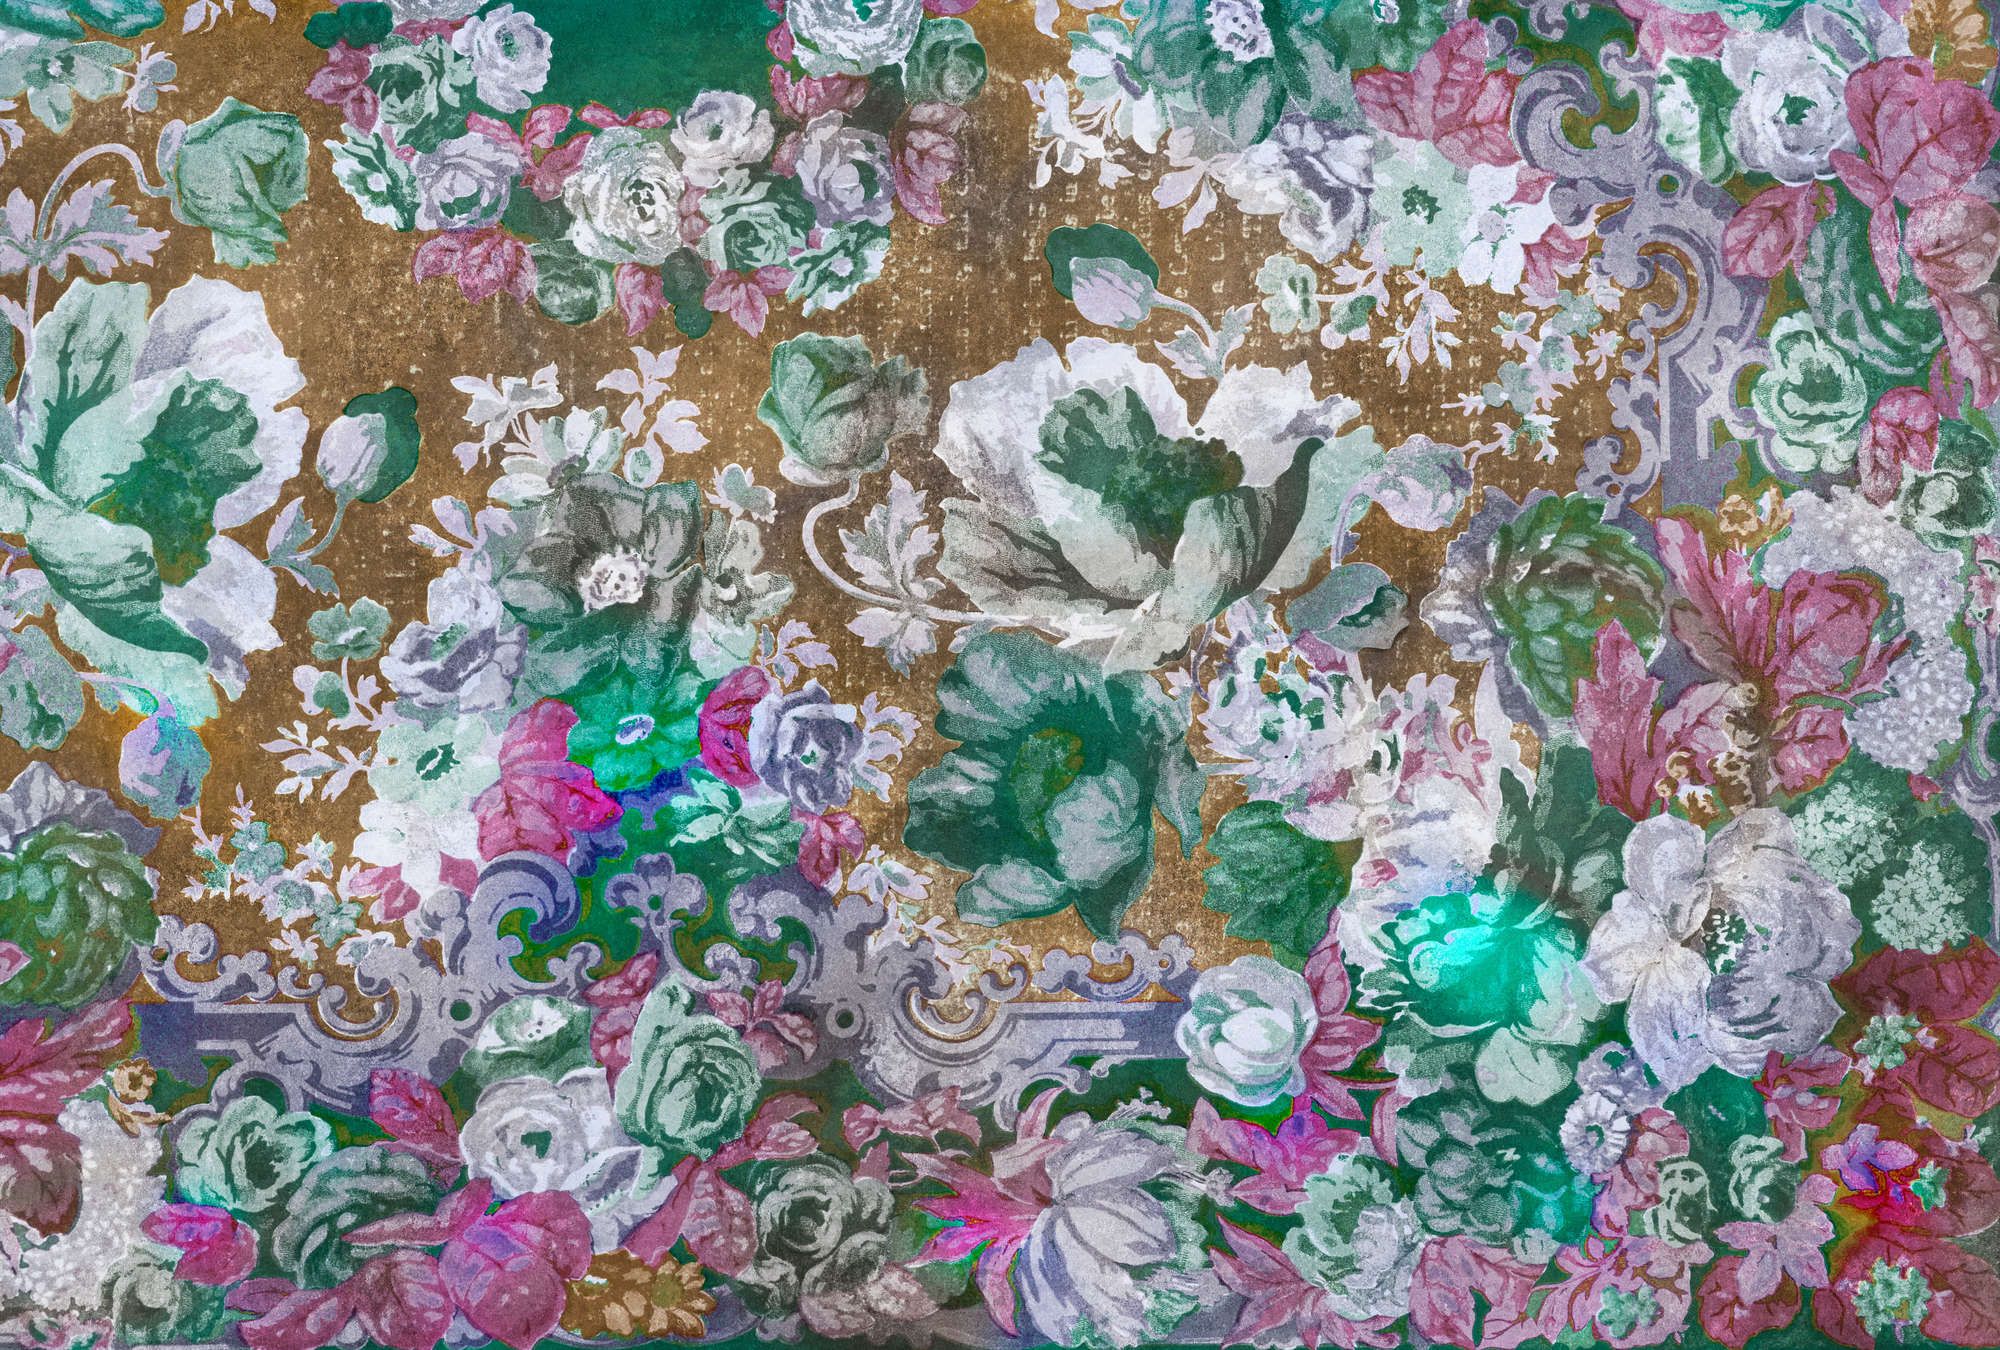             Fotomural »carmente 1« - Motivo floral de estilo clásico sobre una textura de yeso vintage - Coloreado | Material no tejido de alta calidad, liso y ligeramente brillante.
        